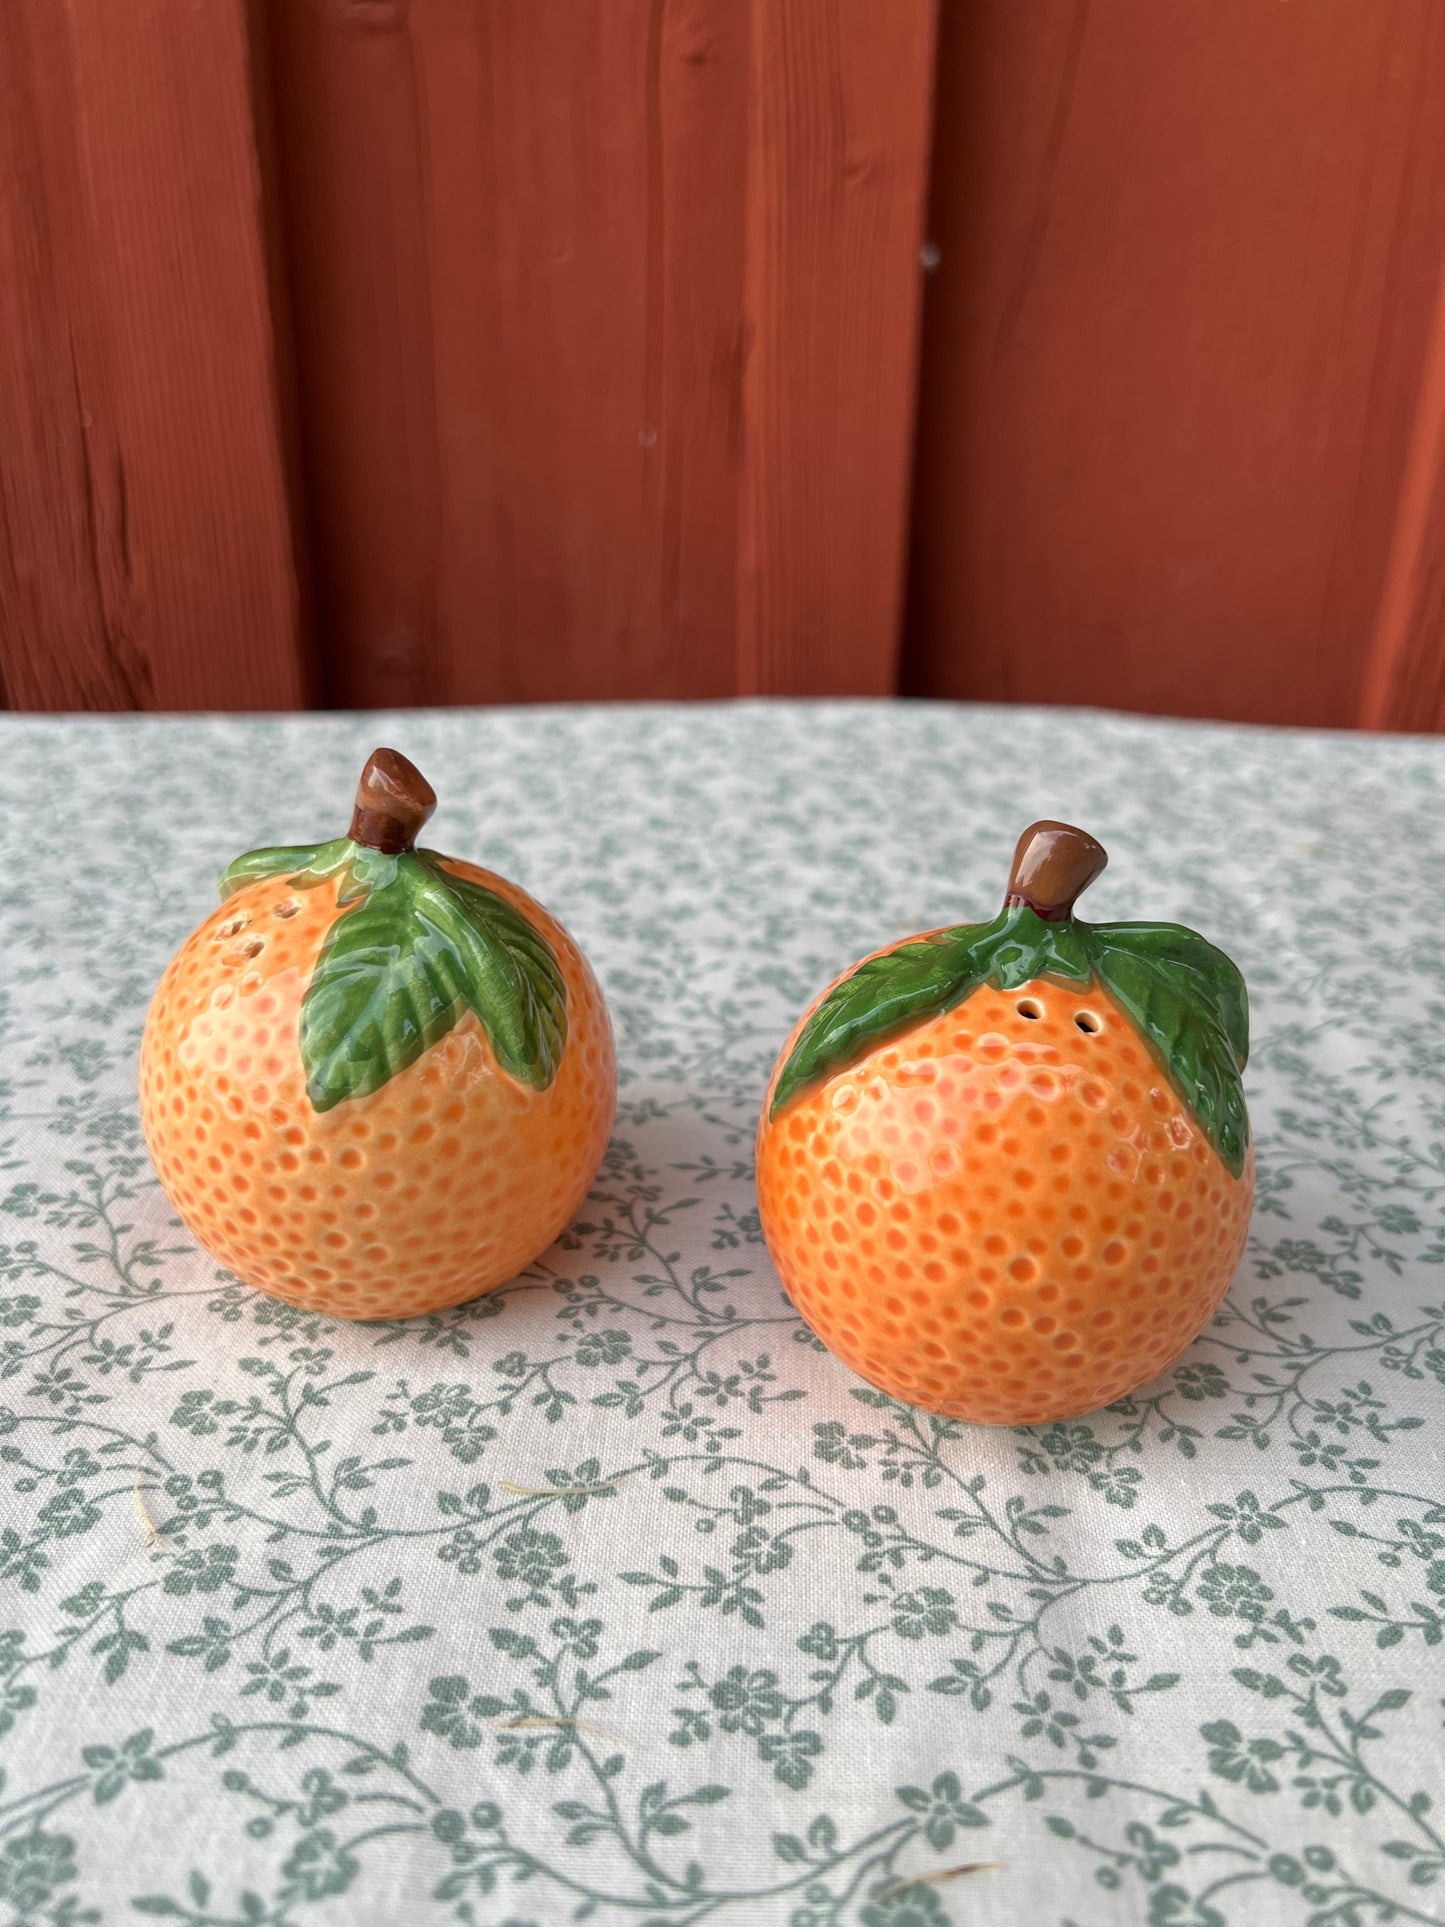 Salt och peppar - apelsin